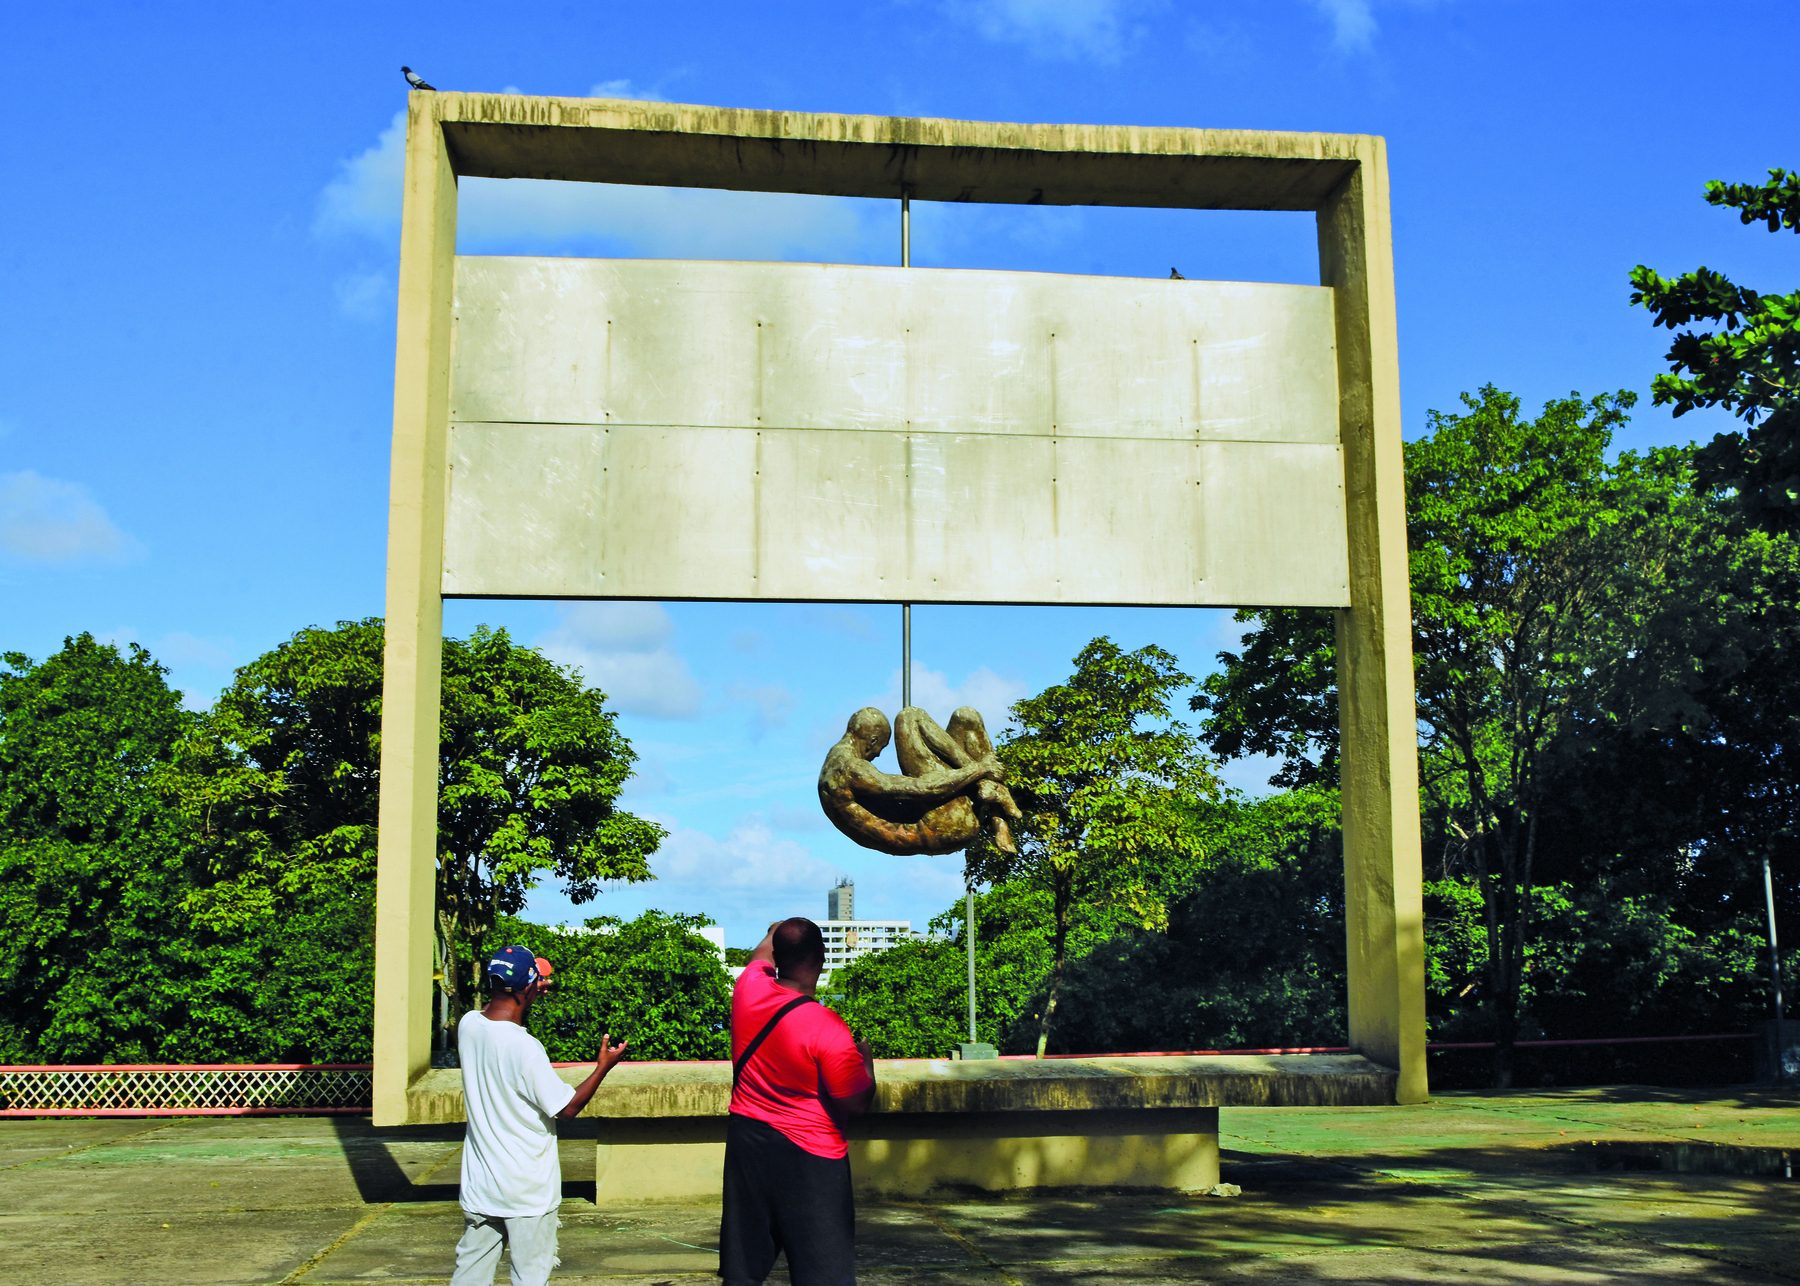 Fotografia. Dois homens observam uma escultura em uma região arborizada. Moldura retangular, com uma placa retangular disposta horizontalmente no centro. Abaixo da placa, uma pessoa com o corpo encolhido, abraçando as pernas.